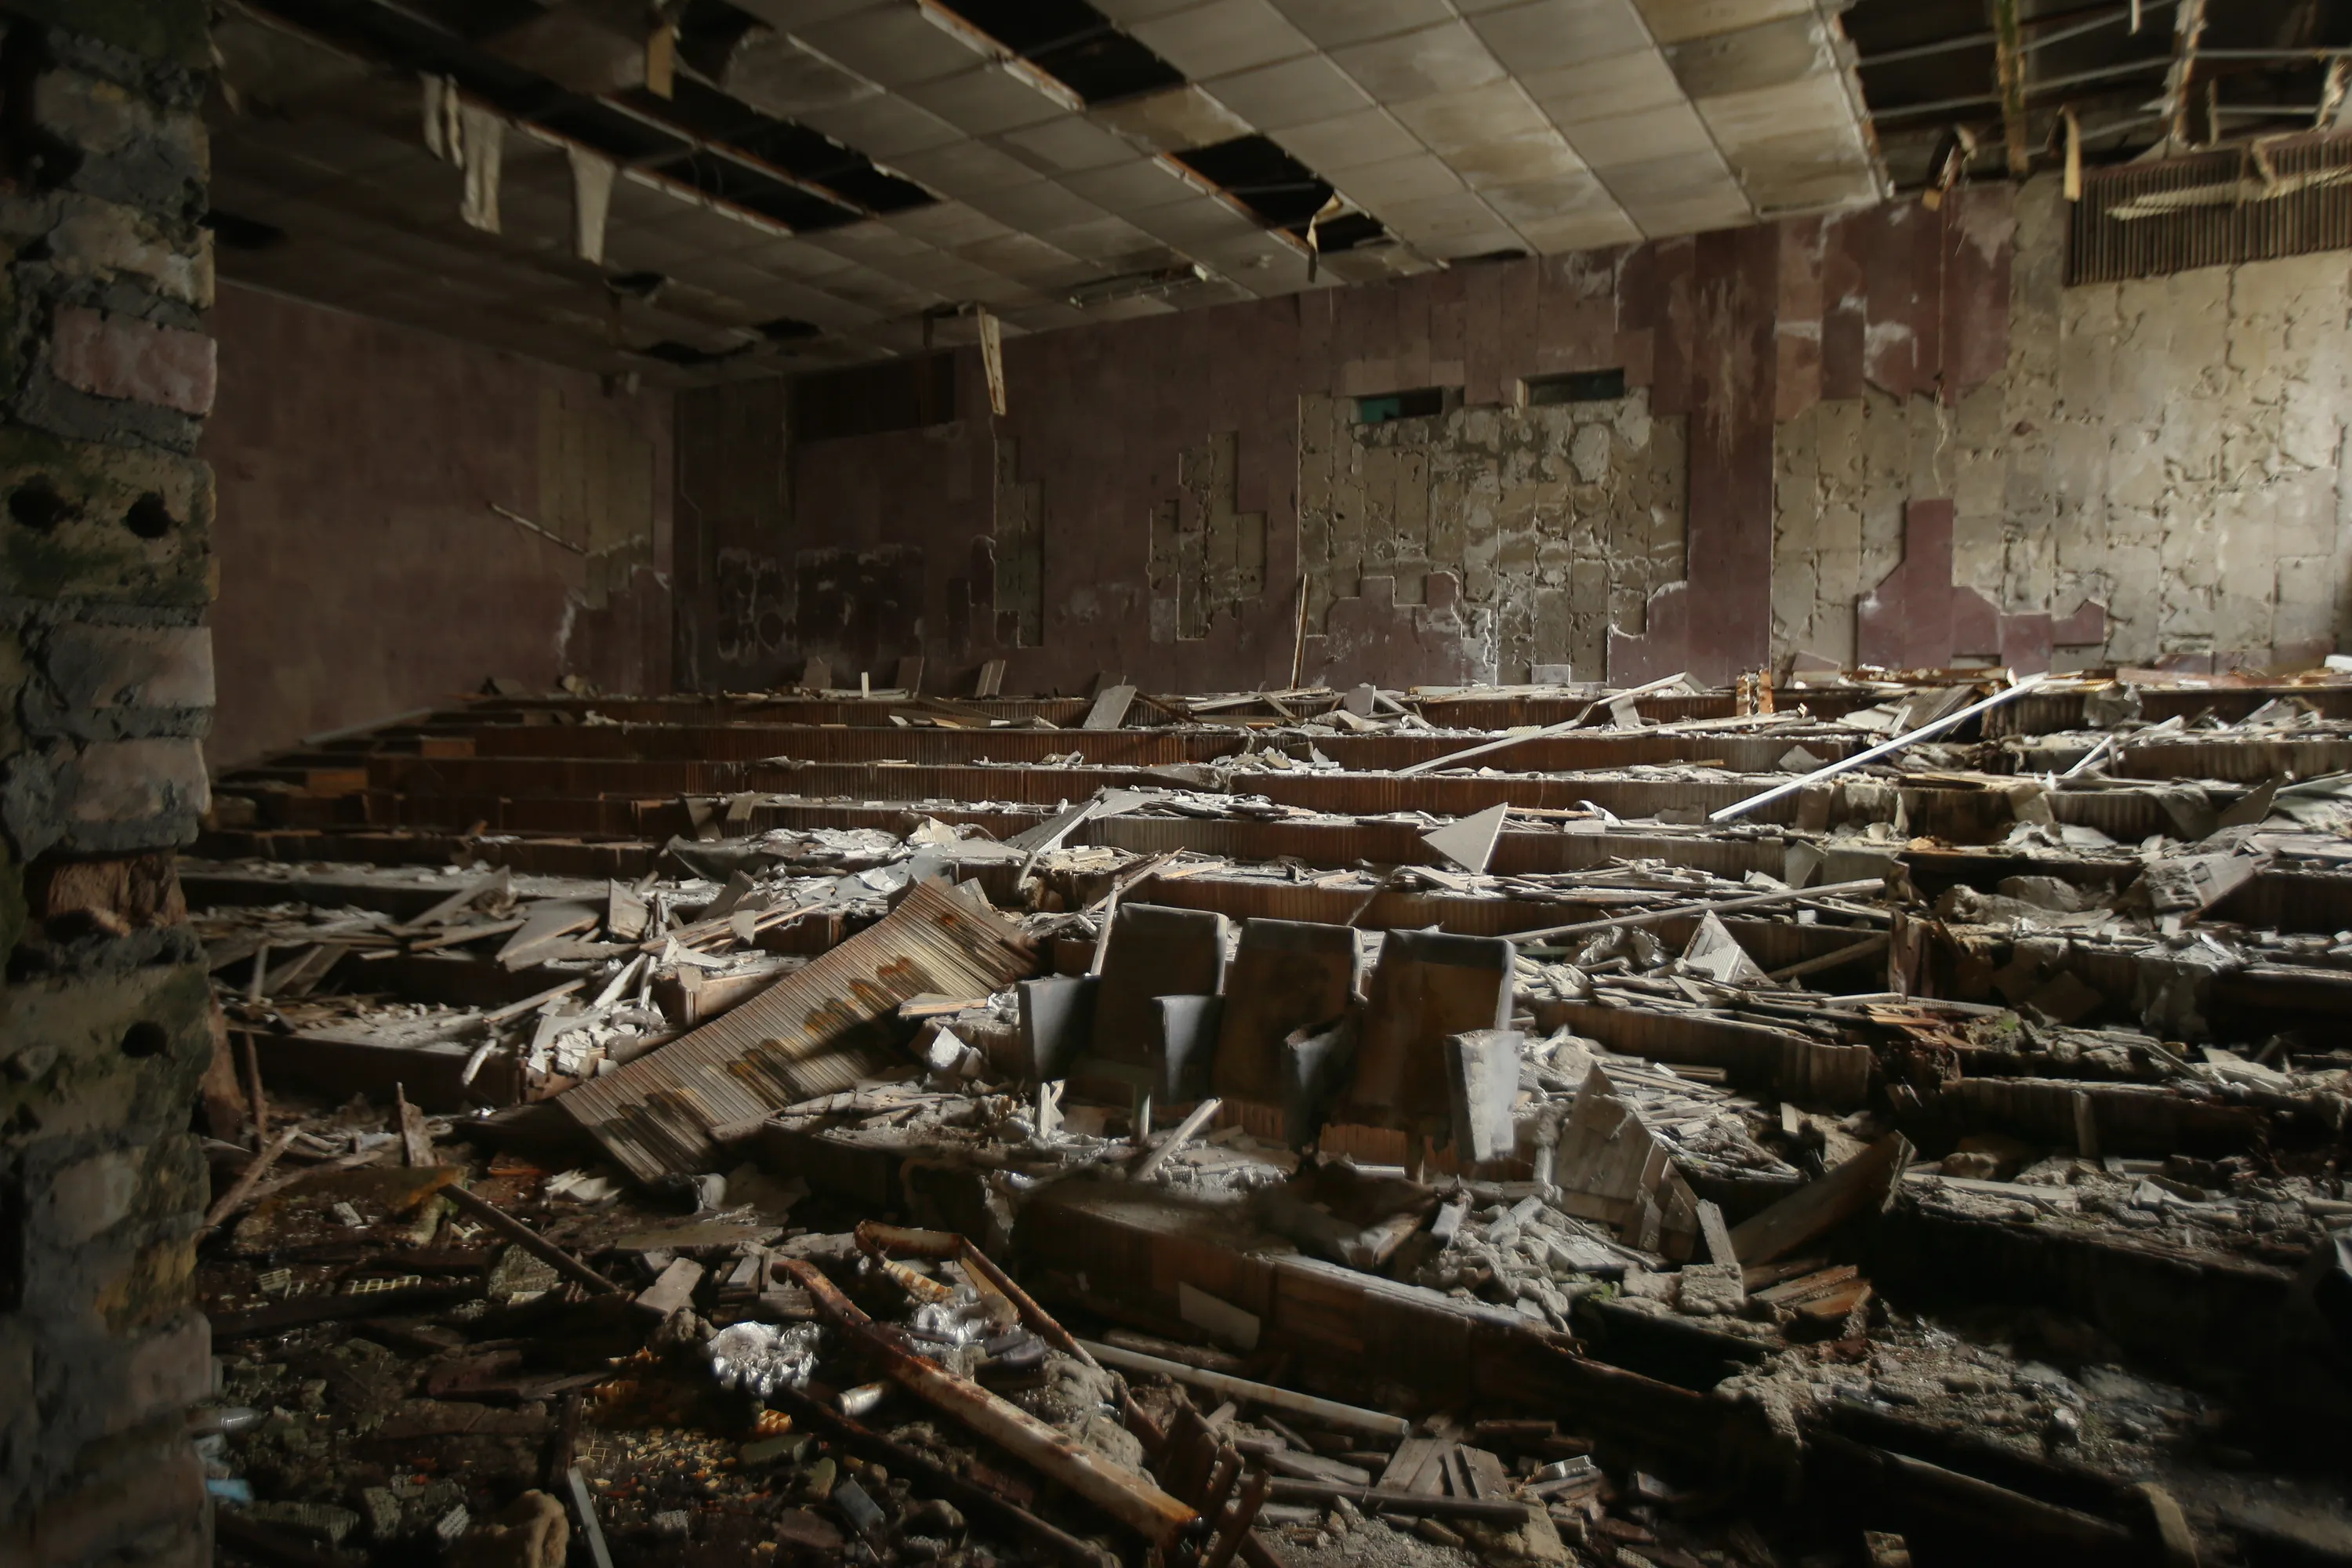 Чернобыль 30 лет спустя 2015. Зона отчуждения Чернобыльской АЭС. Чернобыль Припять 1986. Чернобыль зона отчуждения катастрофа 1986. Припять зона отчуждения 30 лет спустя.